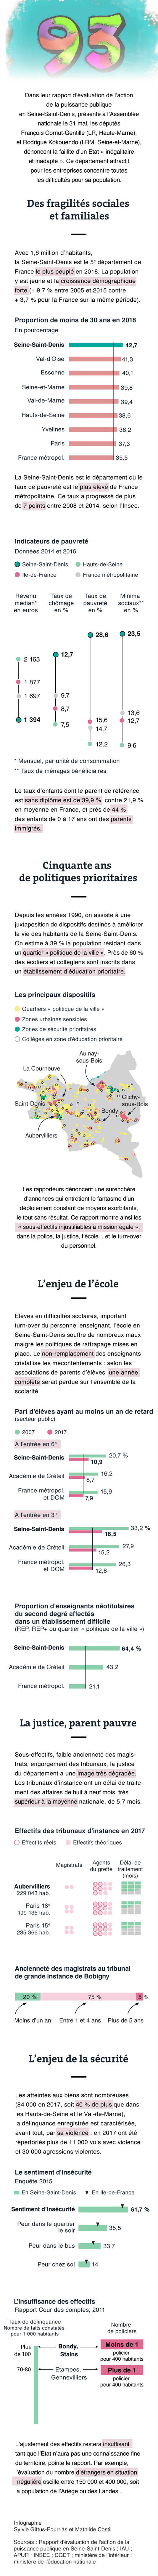 Etat des lieux (justice, éducation, sécurité) en Seine-Saint-Denis